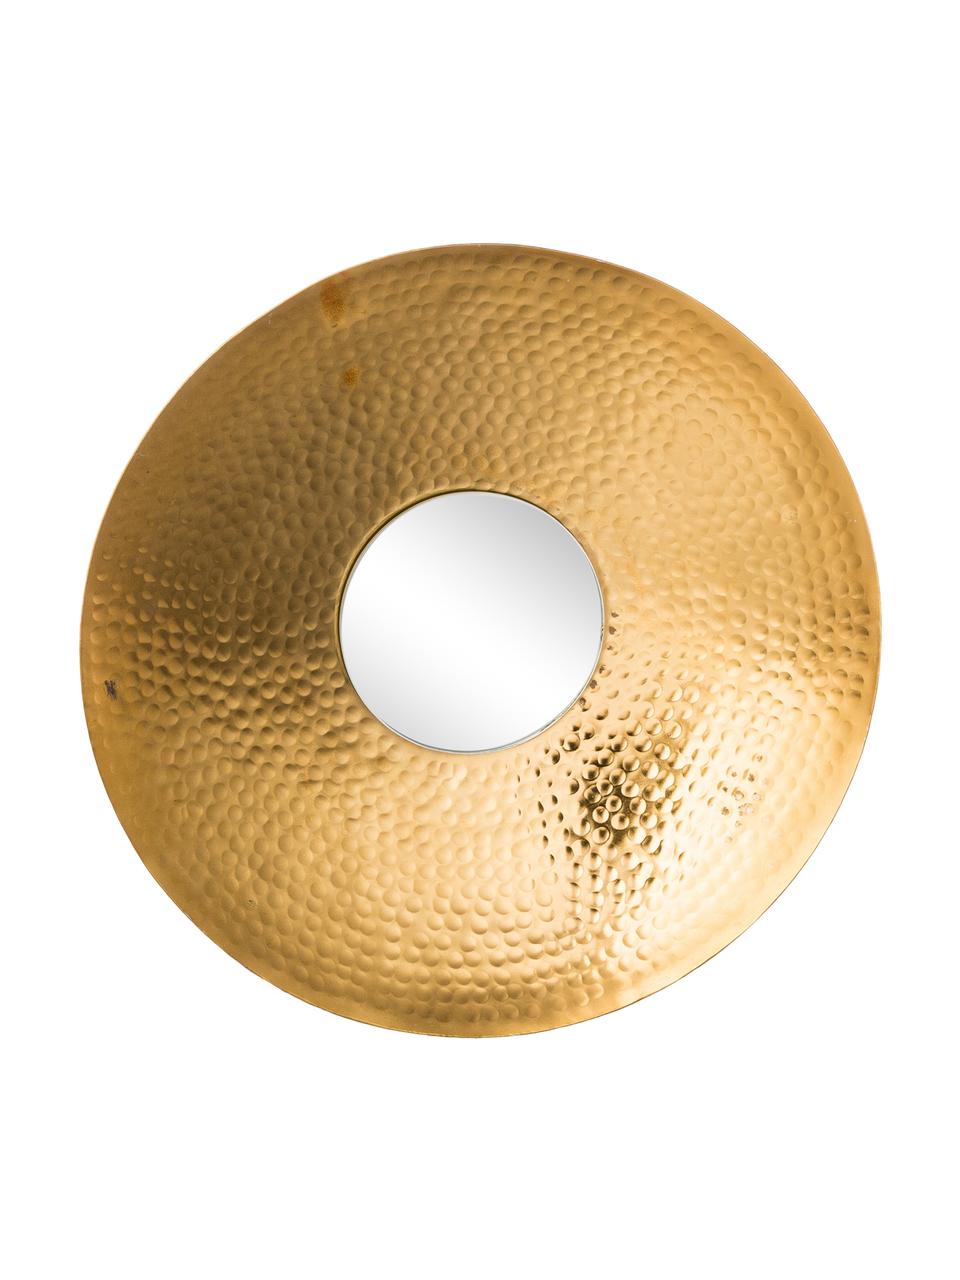 Rundes Wandspiegel-Set Eyes mit goldenem Aluminiumrahmen, 3-tlg, Rahmen: Aluminium, gehämmert und , Spiegelfläche: Spiegelglas, Goldfarben, Set mit verschiedenen Größen